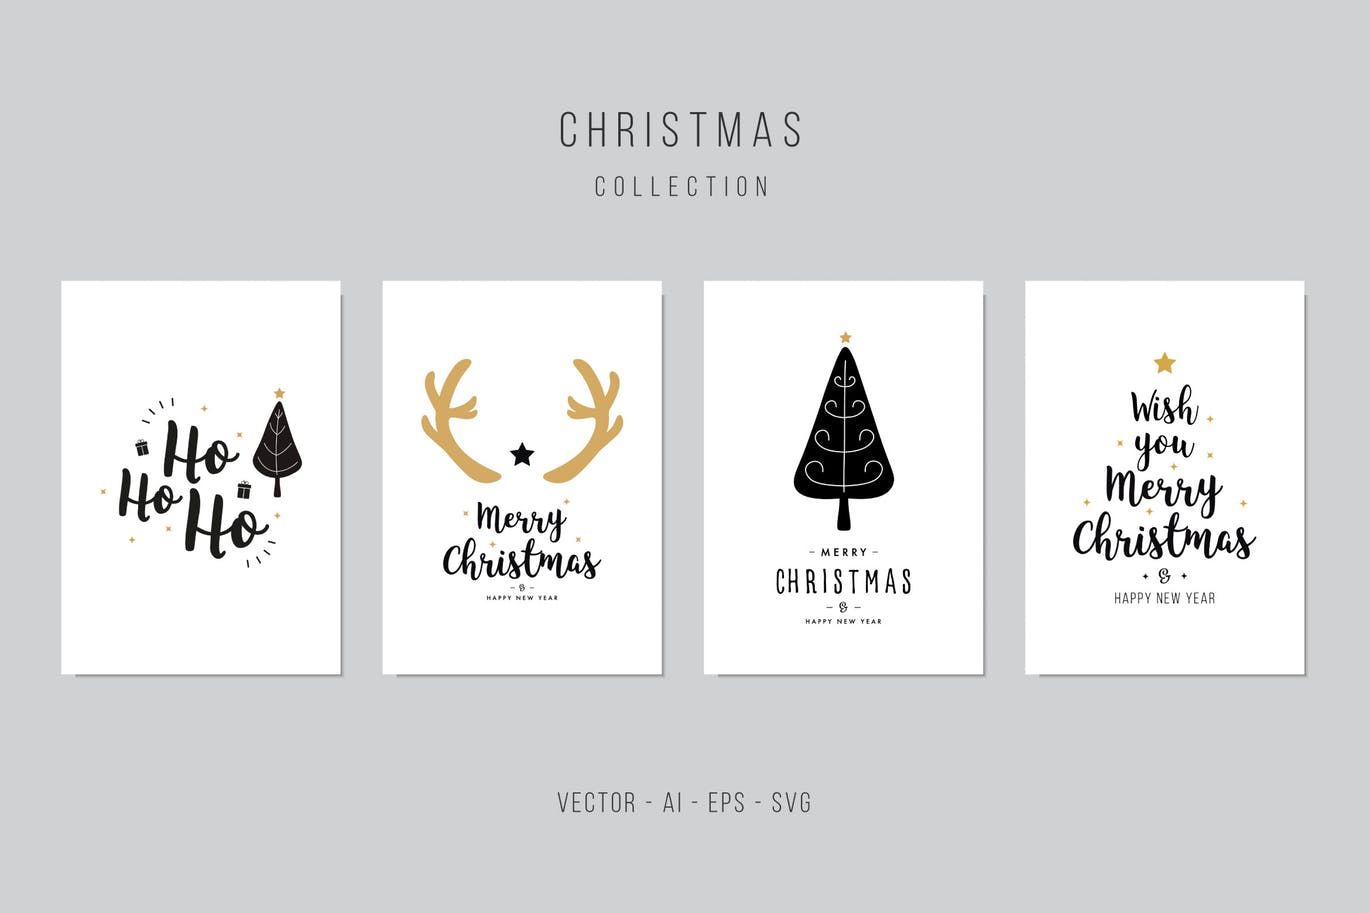 鹿角&圣诞树手绘图案圣诞节贺卡矢量设计模板集v1 Christmas Greeting Vector Card Set插图